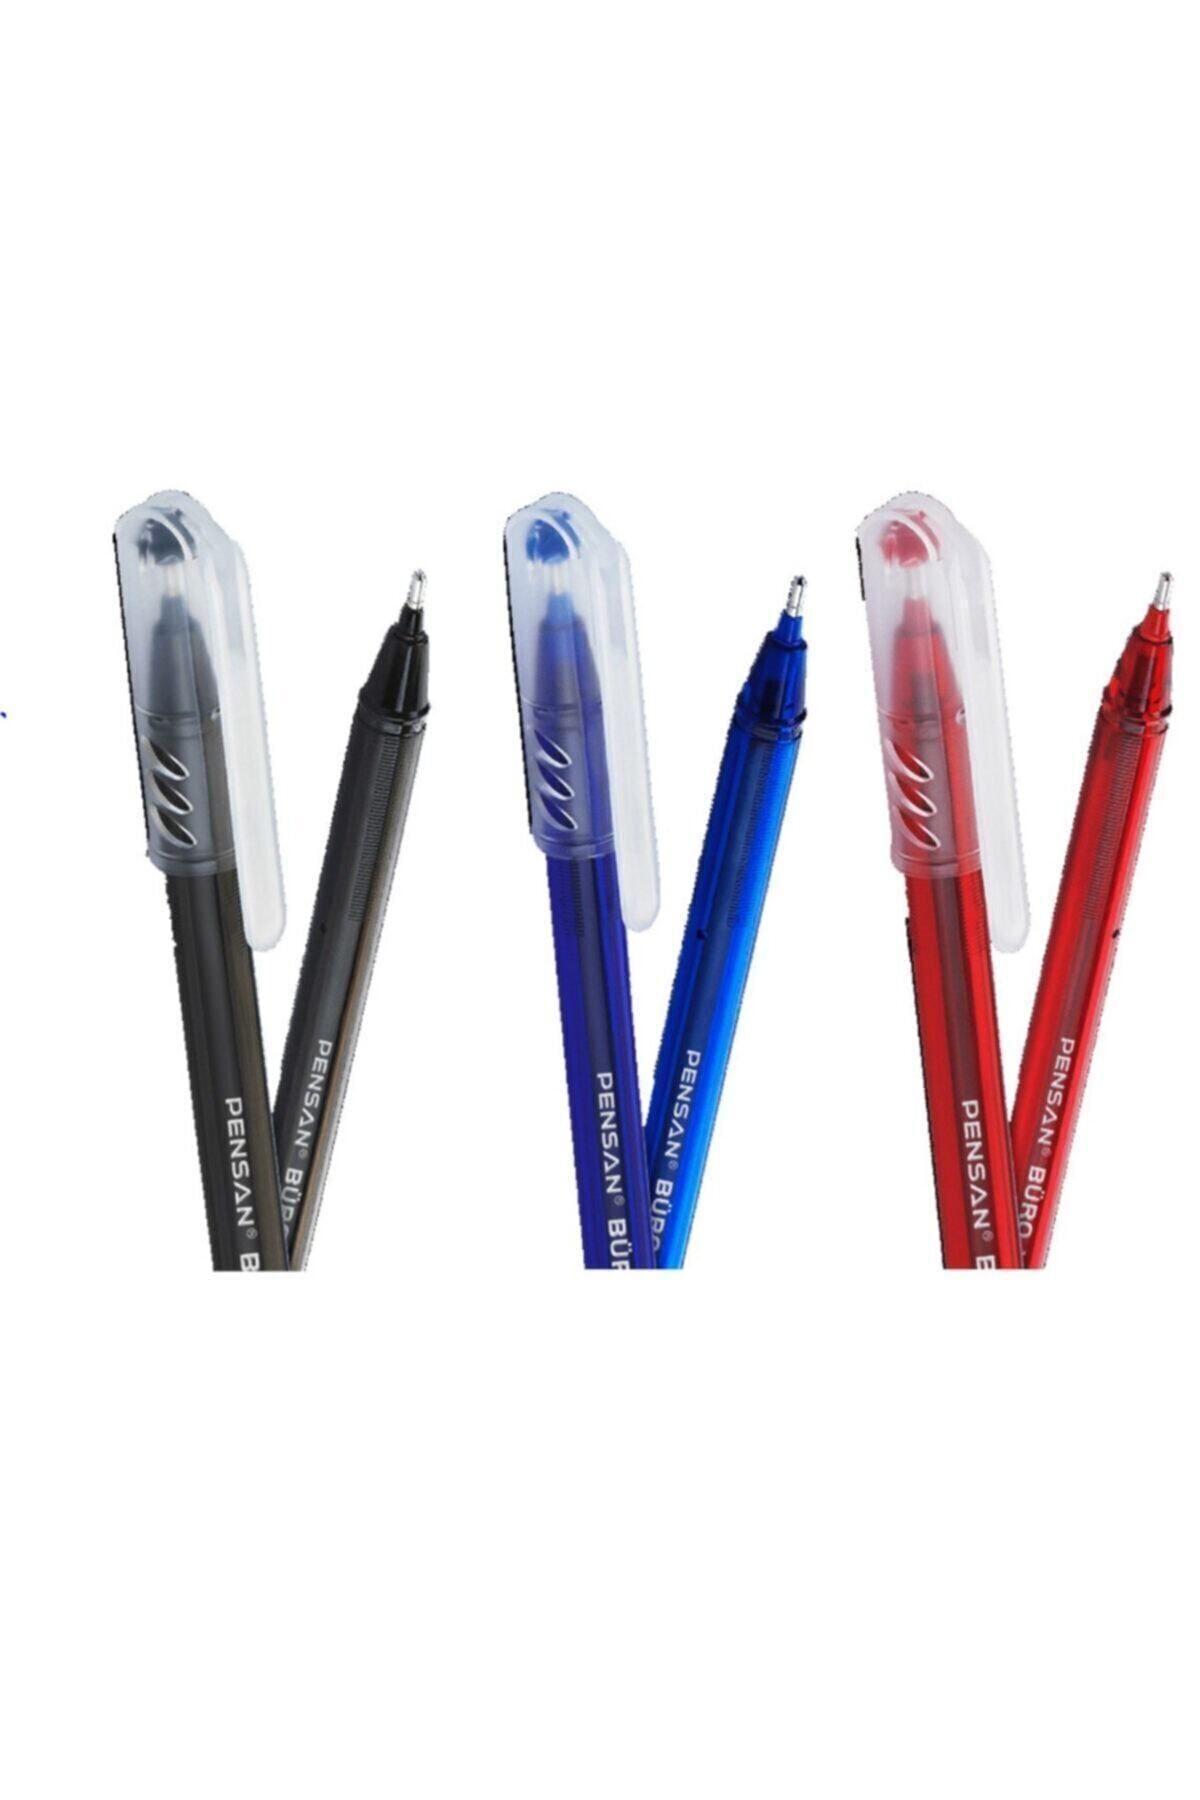 Pensan Büro 1.0 Mm Tükenmez Kalem 3'lü Set(1 Mavi, 1 Kırmızı, 1 Siyah)